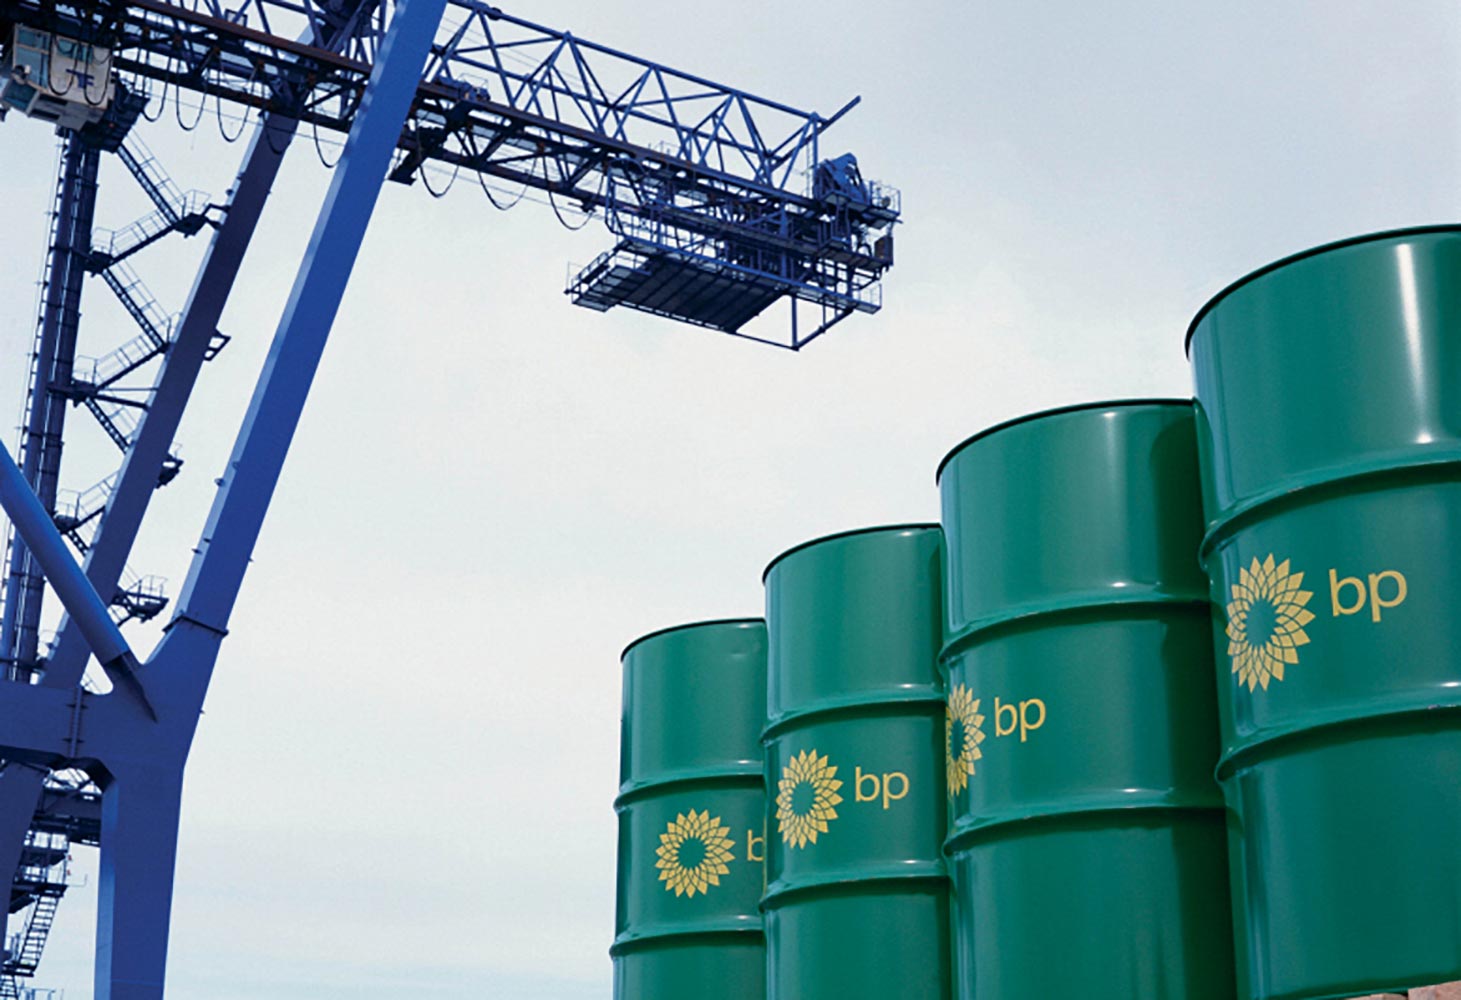 API updates guidelines for bulk engine oil chain of custody